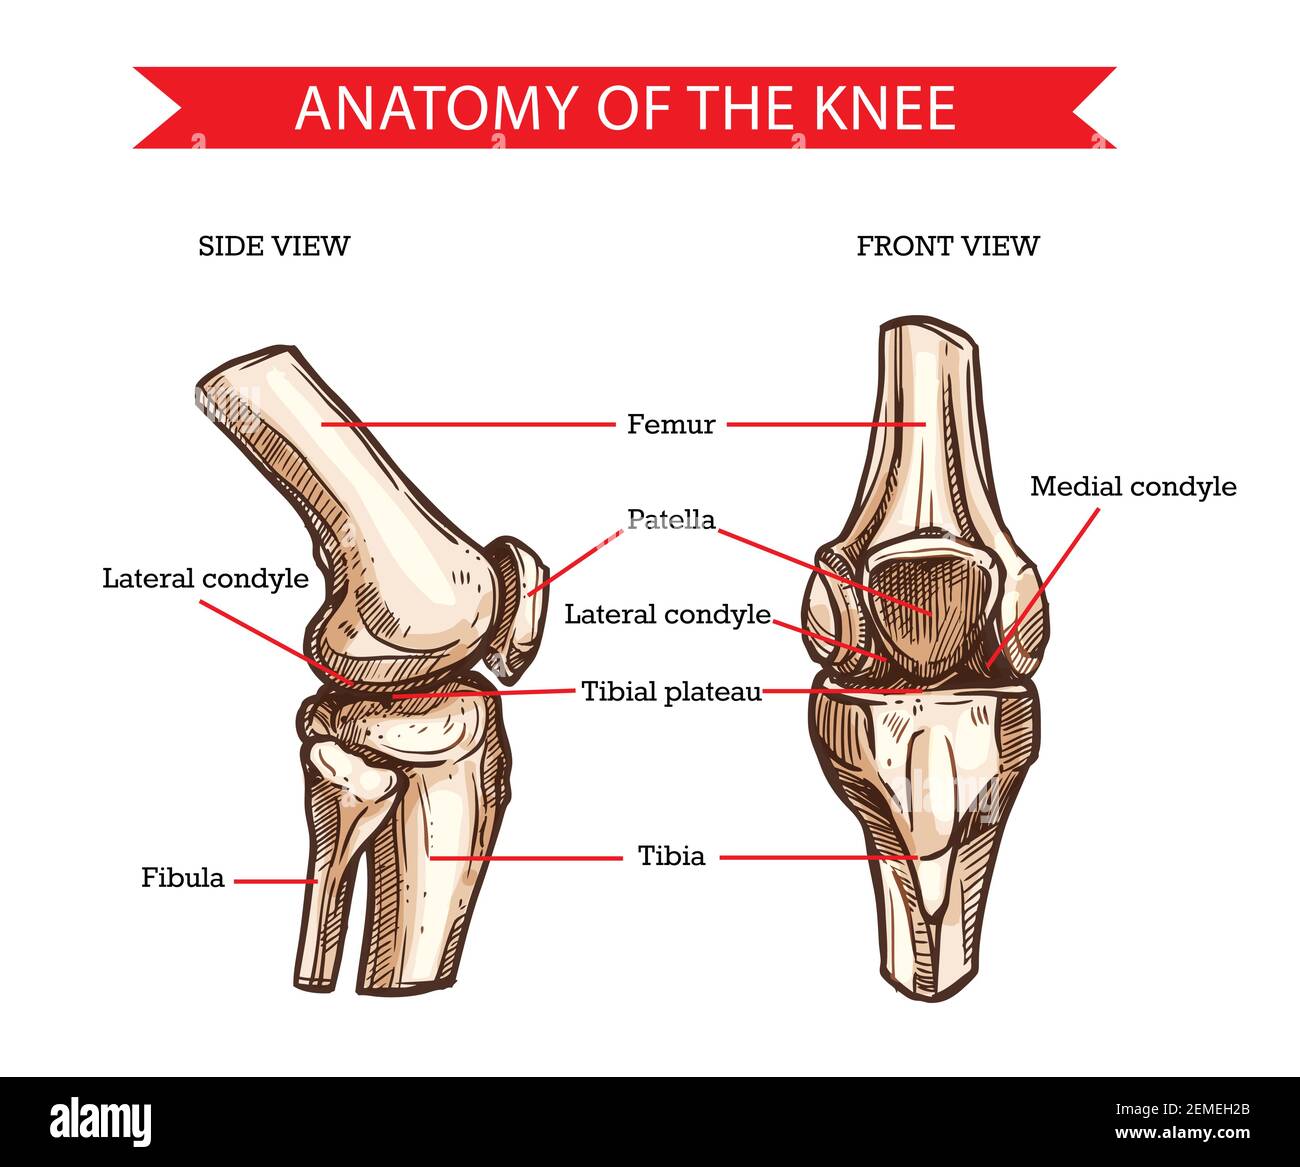 Anatomia del ginocchio umano schizzo vettoriale delle ossa delle gambe e delle articolazioni, disegno medico. Vista laterale e frontale delle ossa del ginocchio, del femore disegnato a mano, della rotula, della tibia e della f Illustrazione Vettoriale